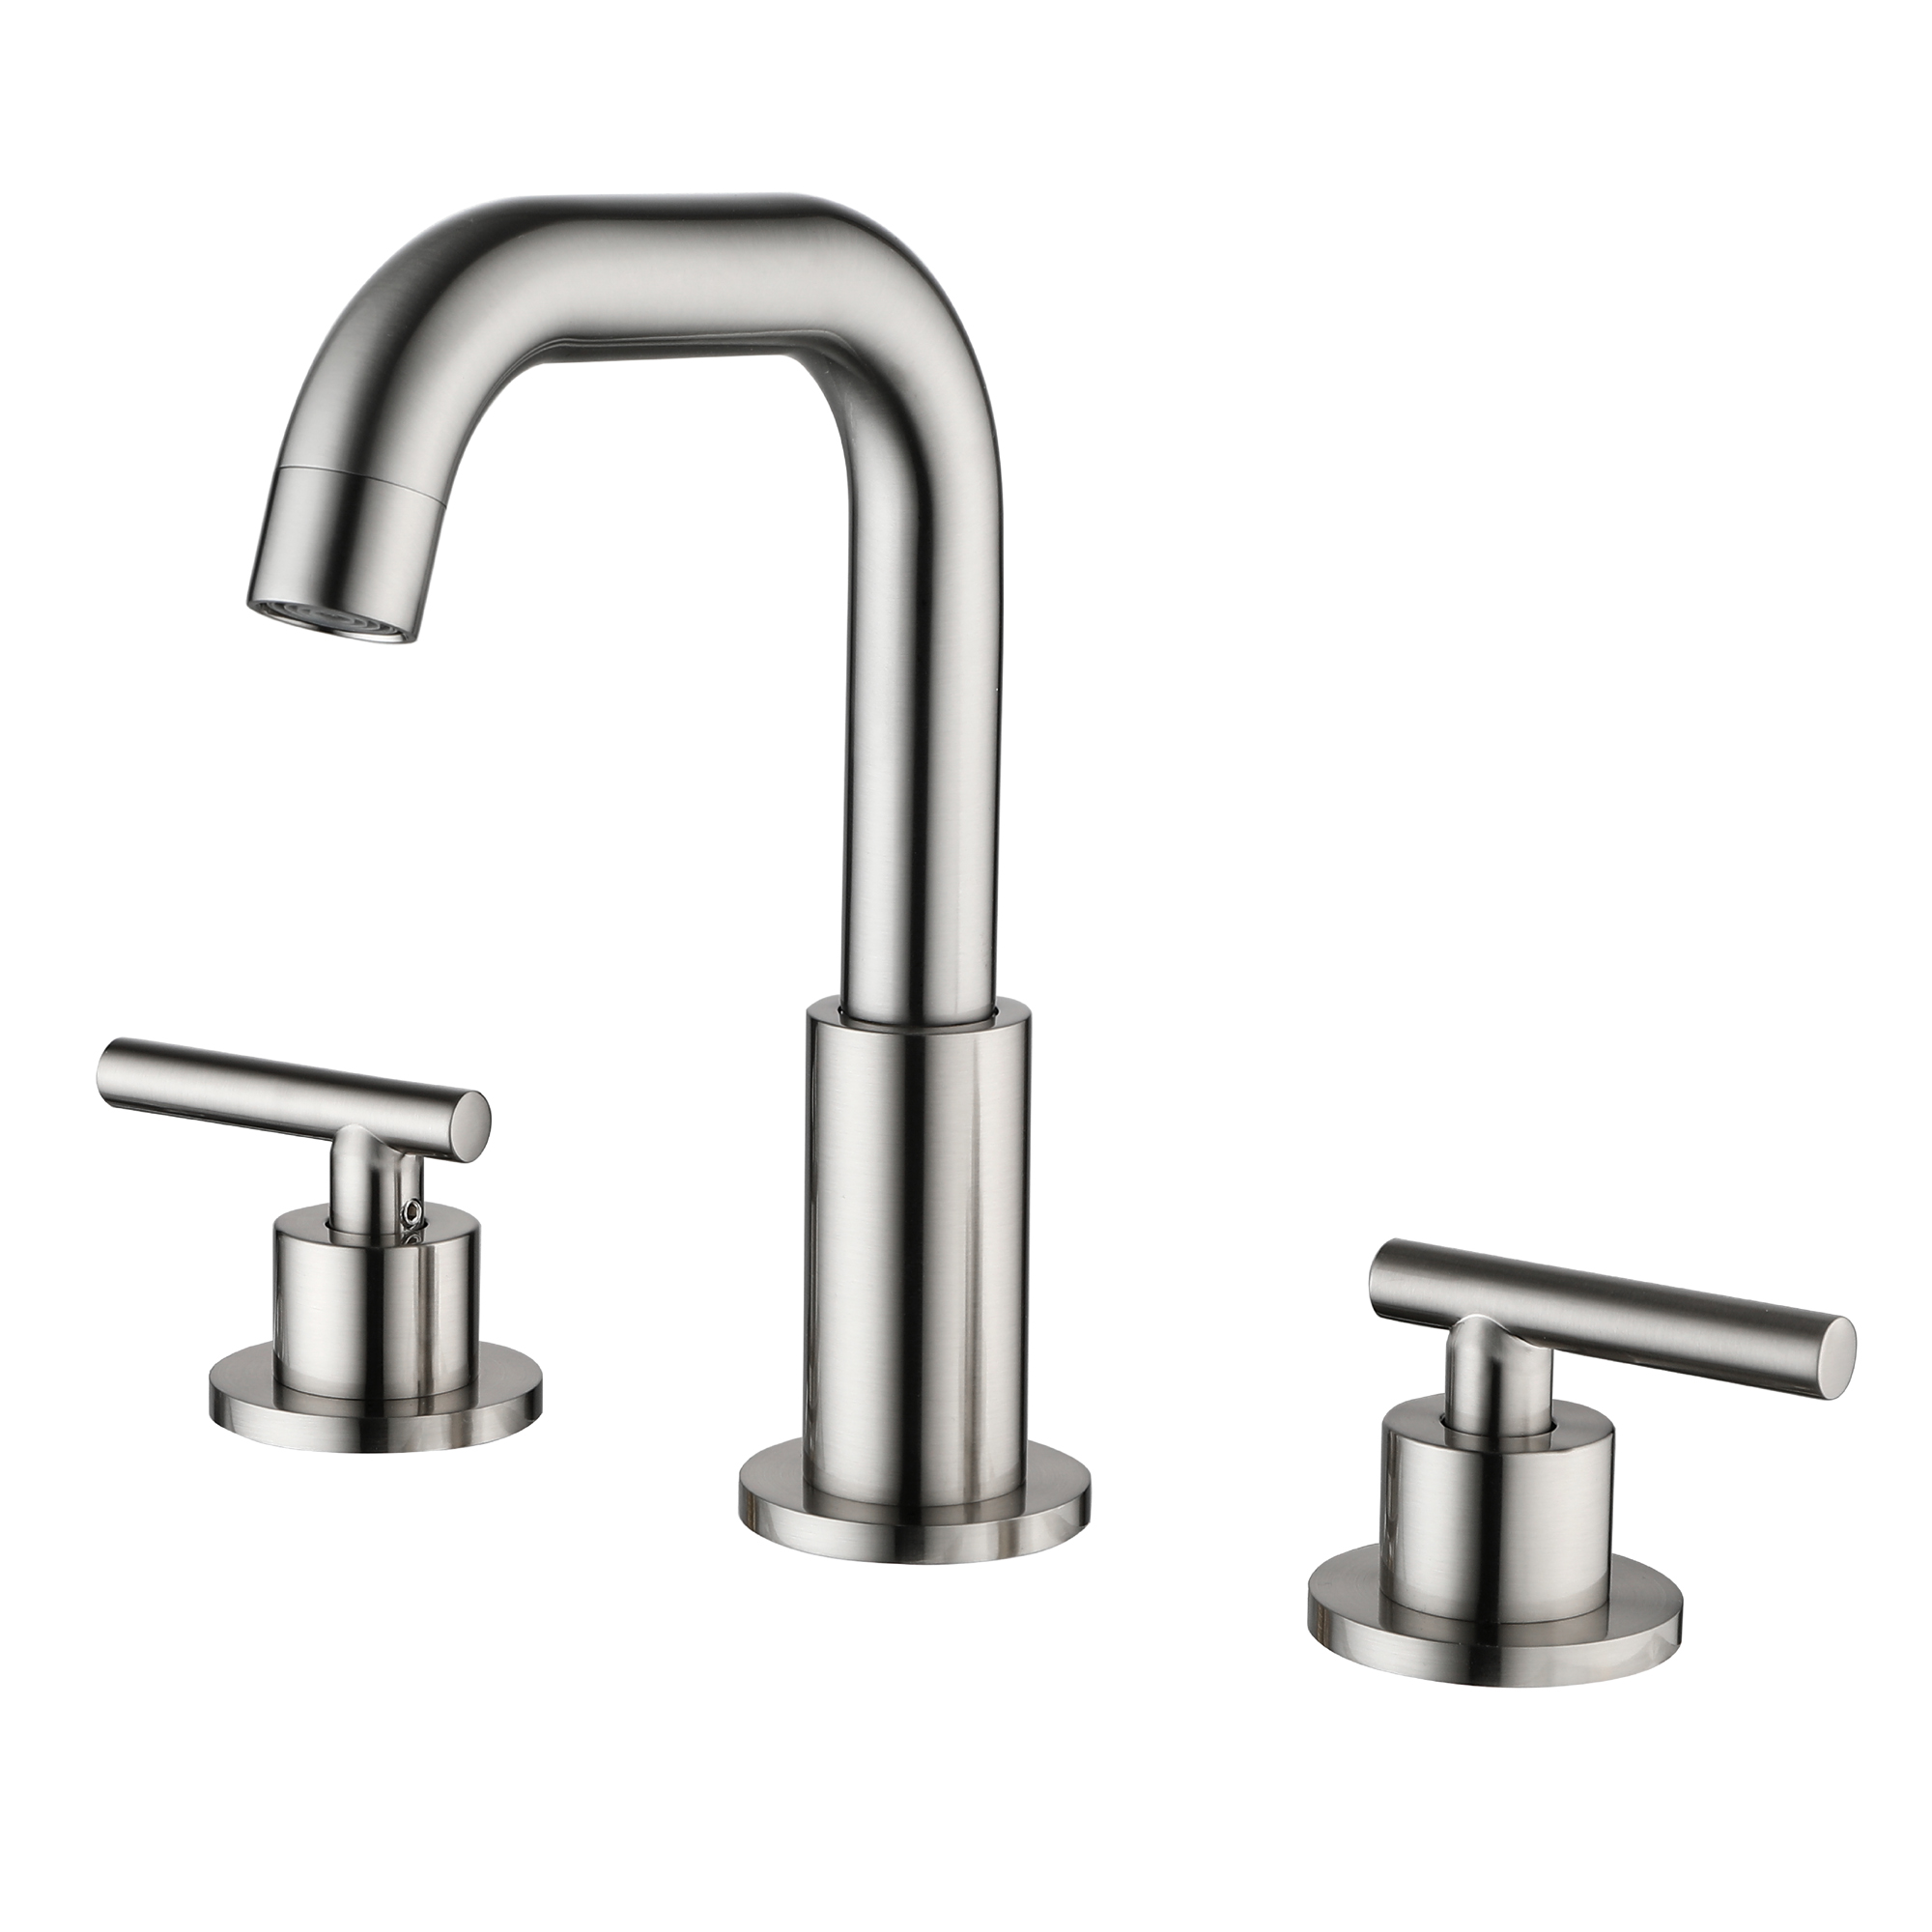 Casainc 8-in Widespread 2-Handle Mid-Arc Bathroom Sink Faucet (Brushed Nickel)-CASAINC